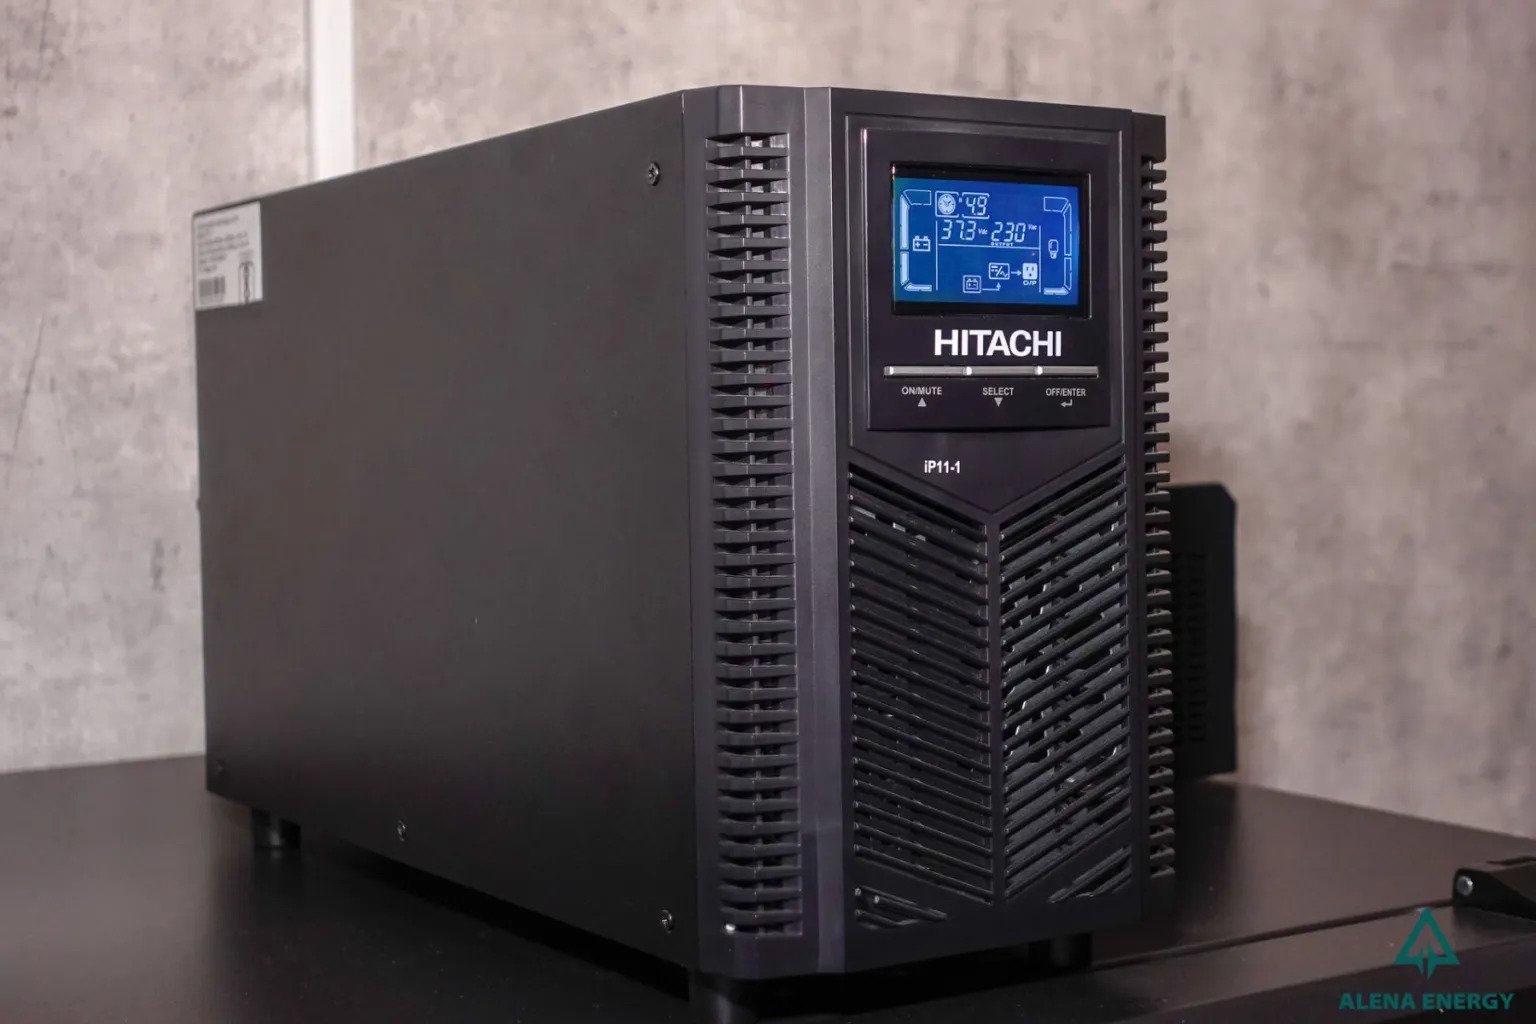 Bộ lưu điện Hitachi iP11s-1: đề phòng sự cố về điện hữu hiệu